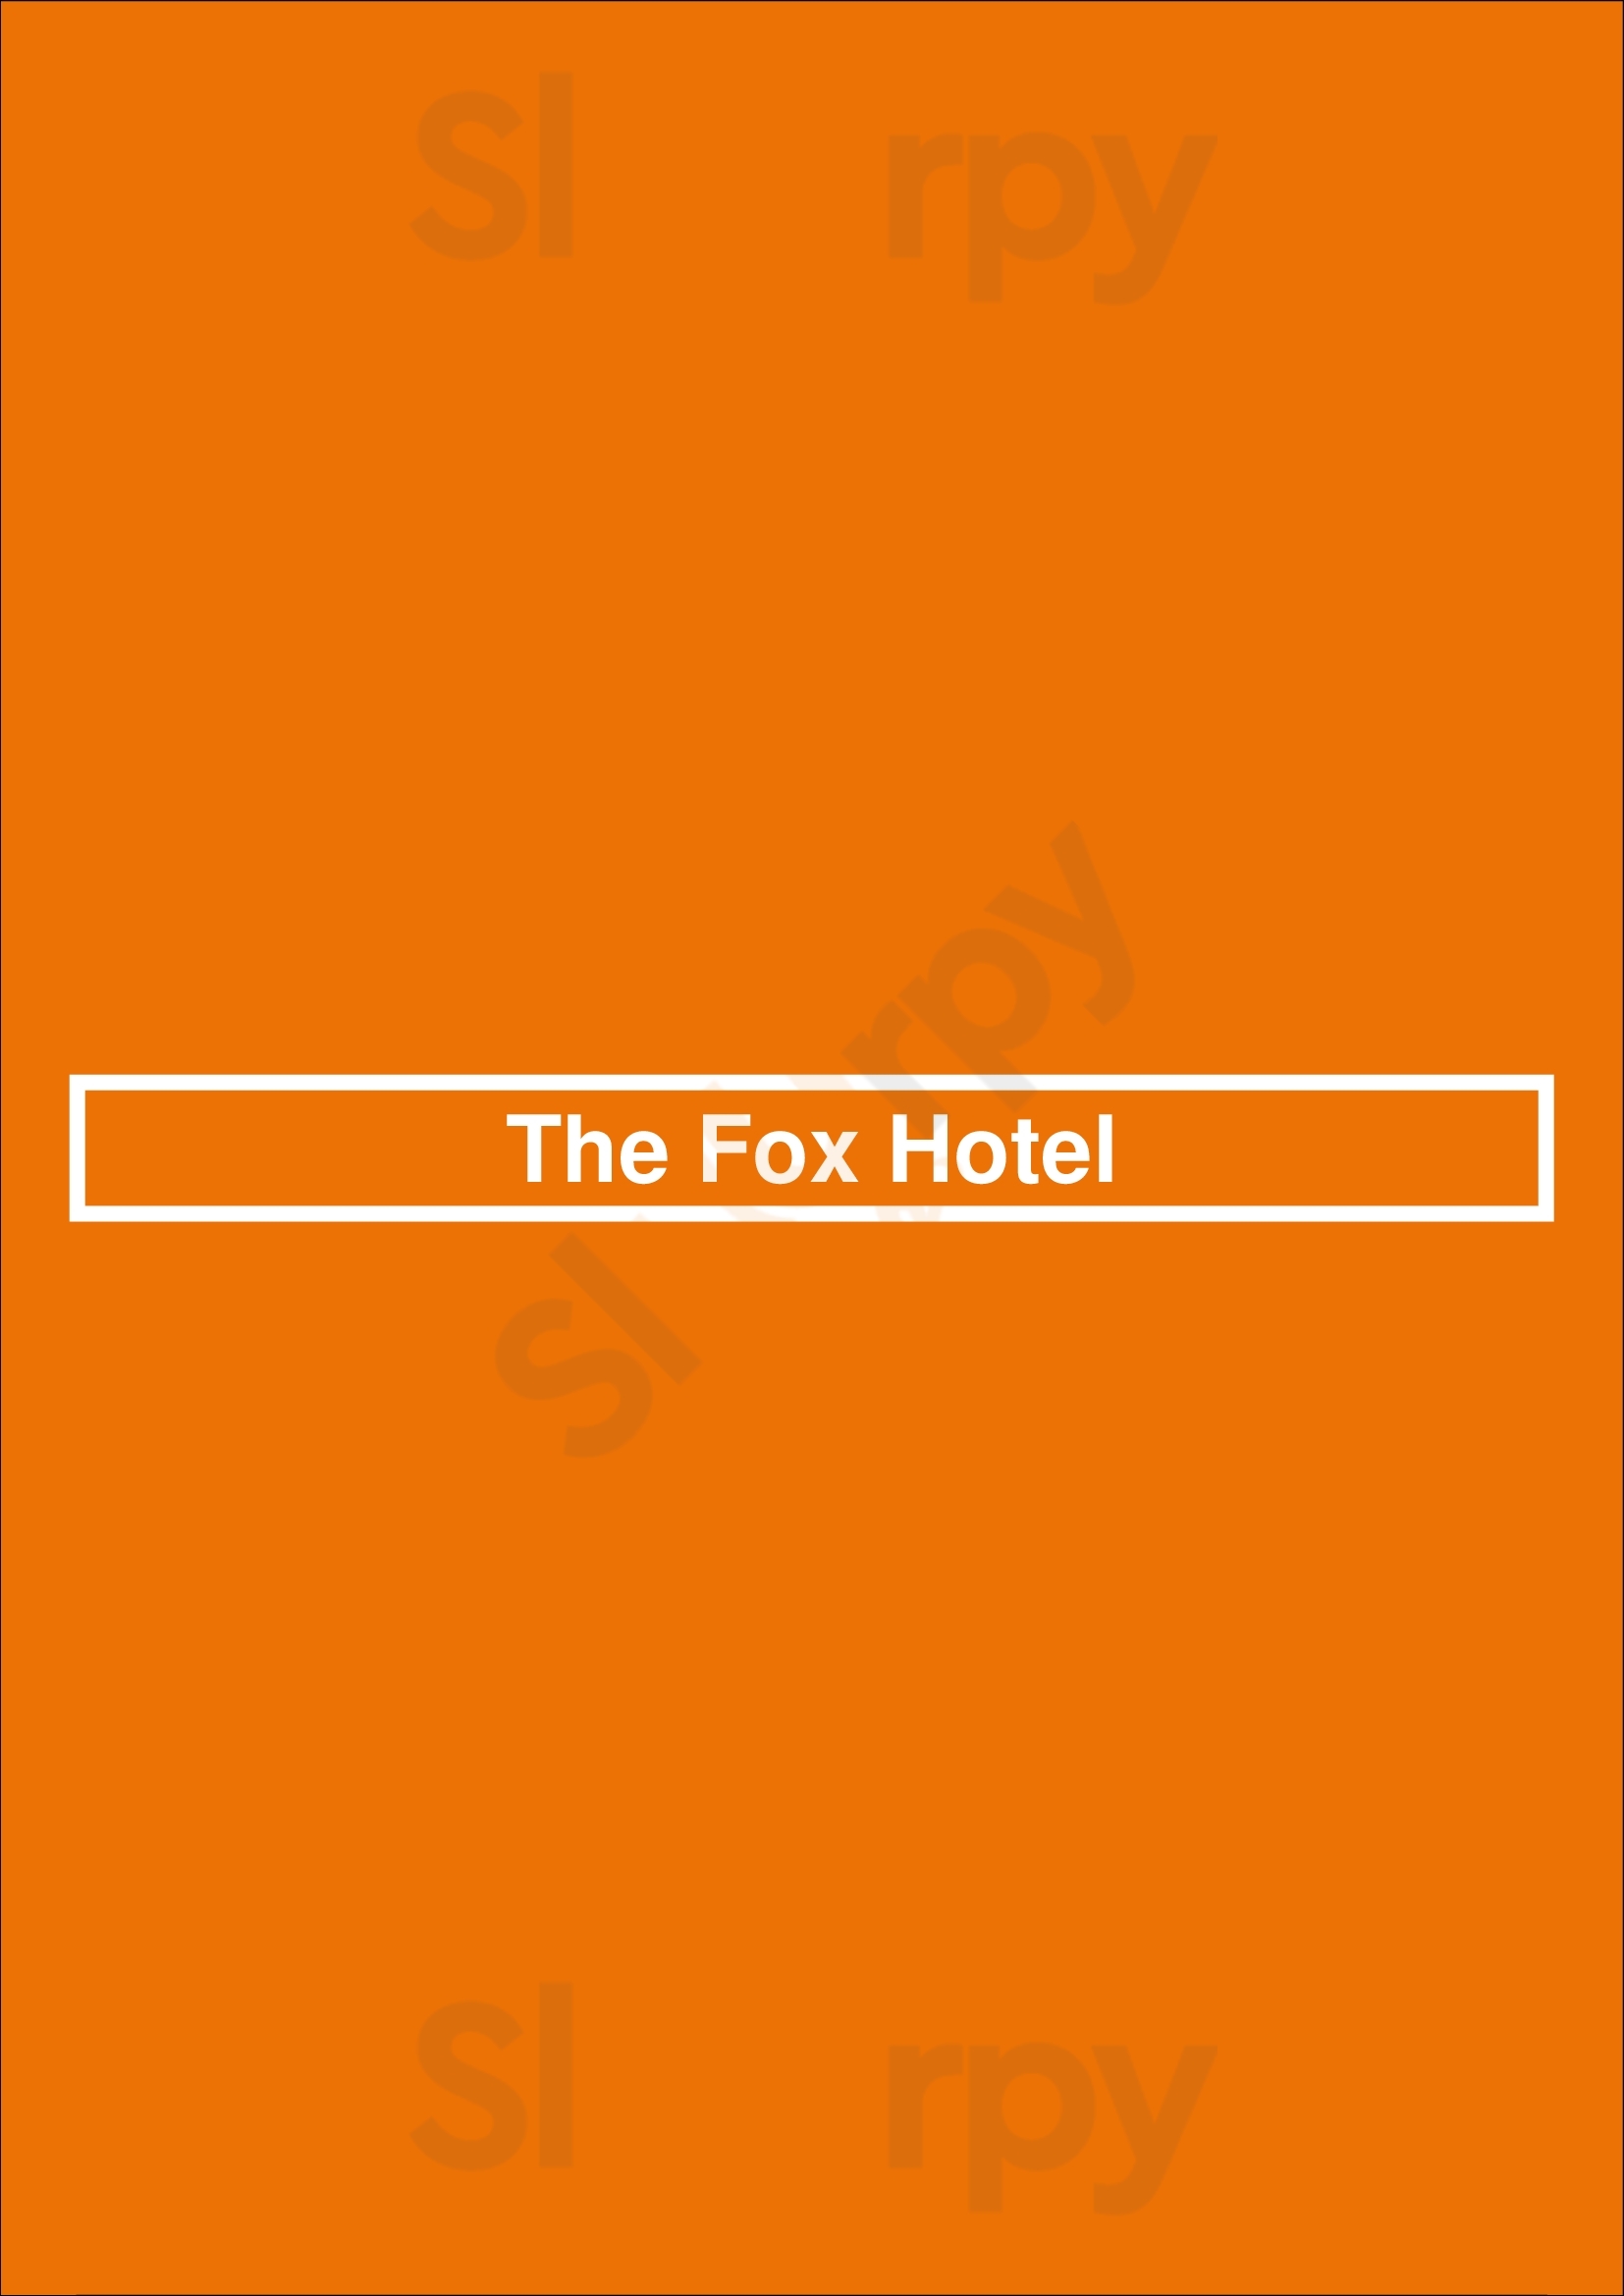 The Fox Hotel Brisbane Menu - 1